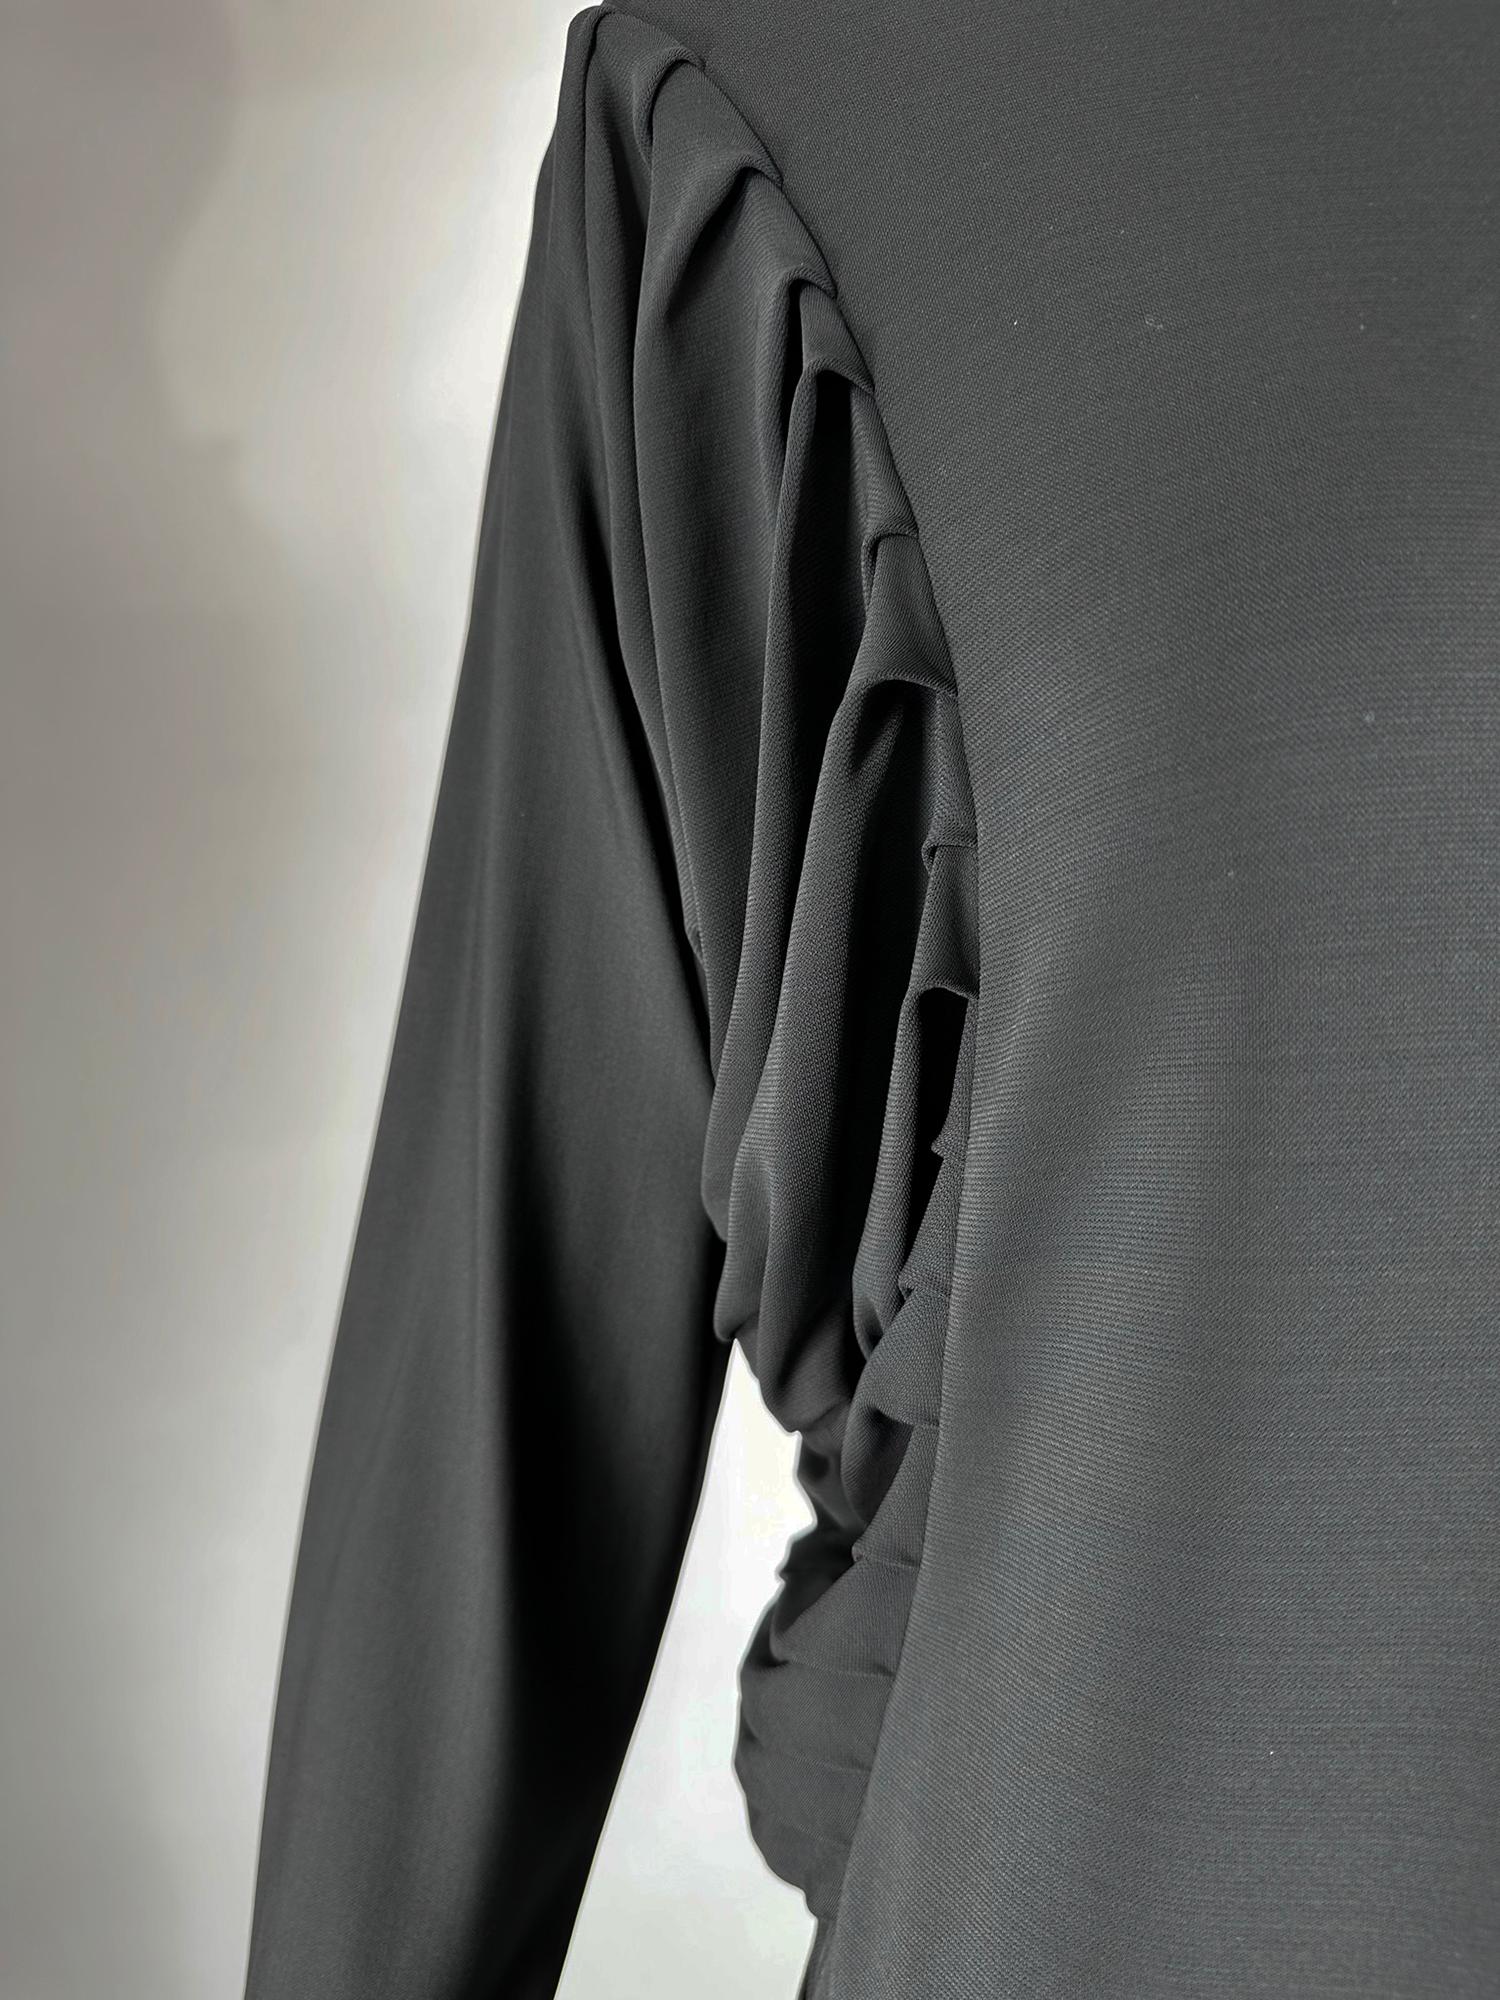 Women's Fendi Silky Black Jersey Pleated Bat Wing Turtle Neck Dress 40 For Sale